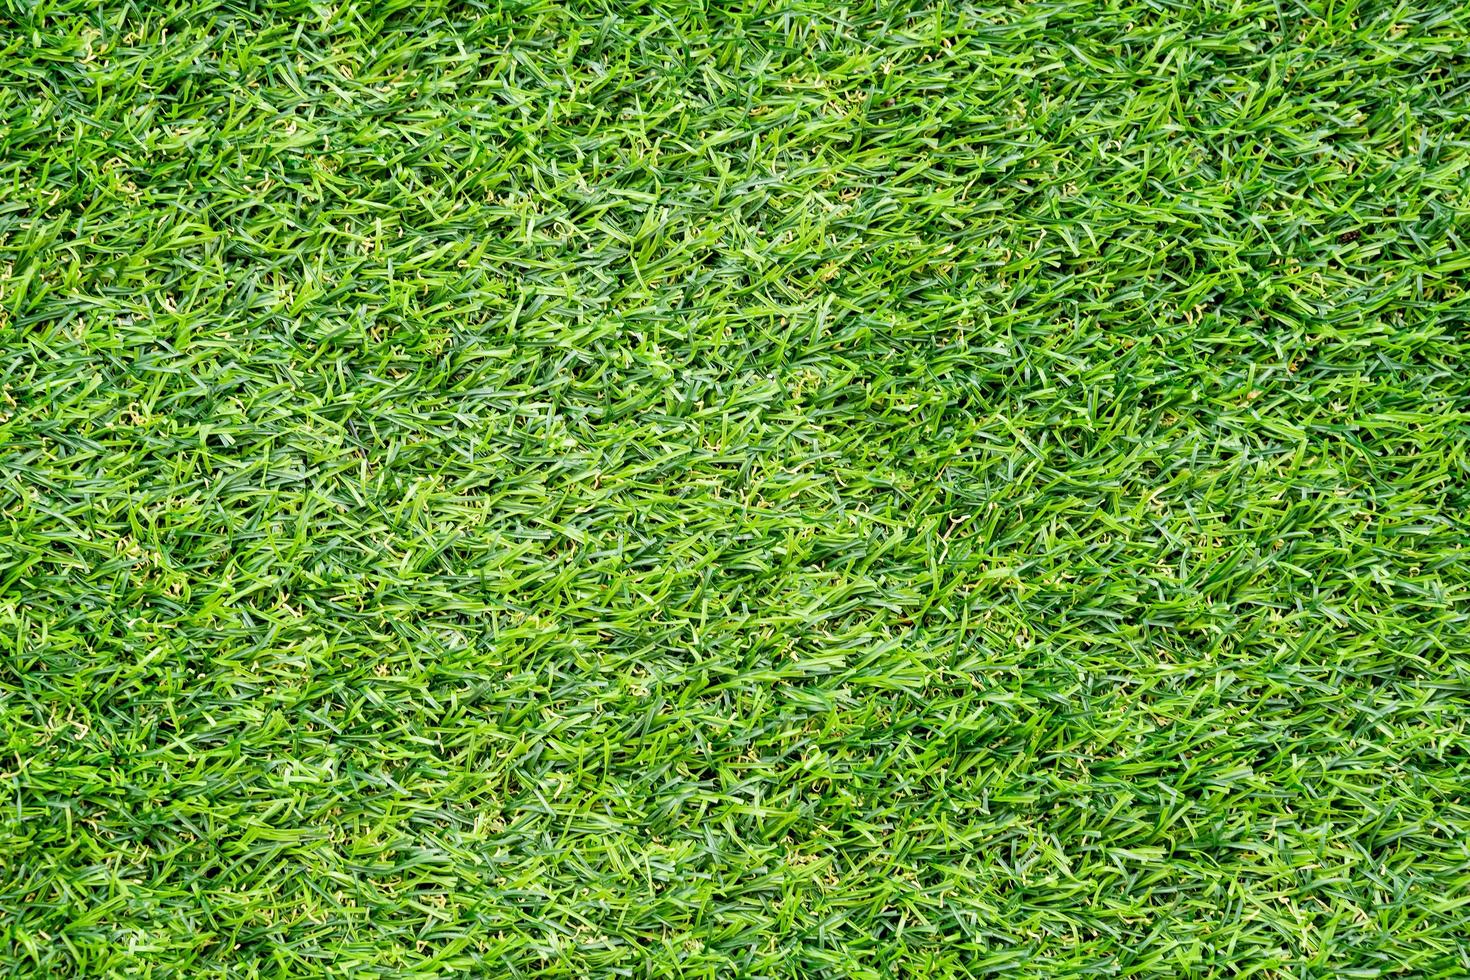 grünes Gras Textur für den Hintergrund. grünes Rasenmuster und Texturhintergrund. foto